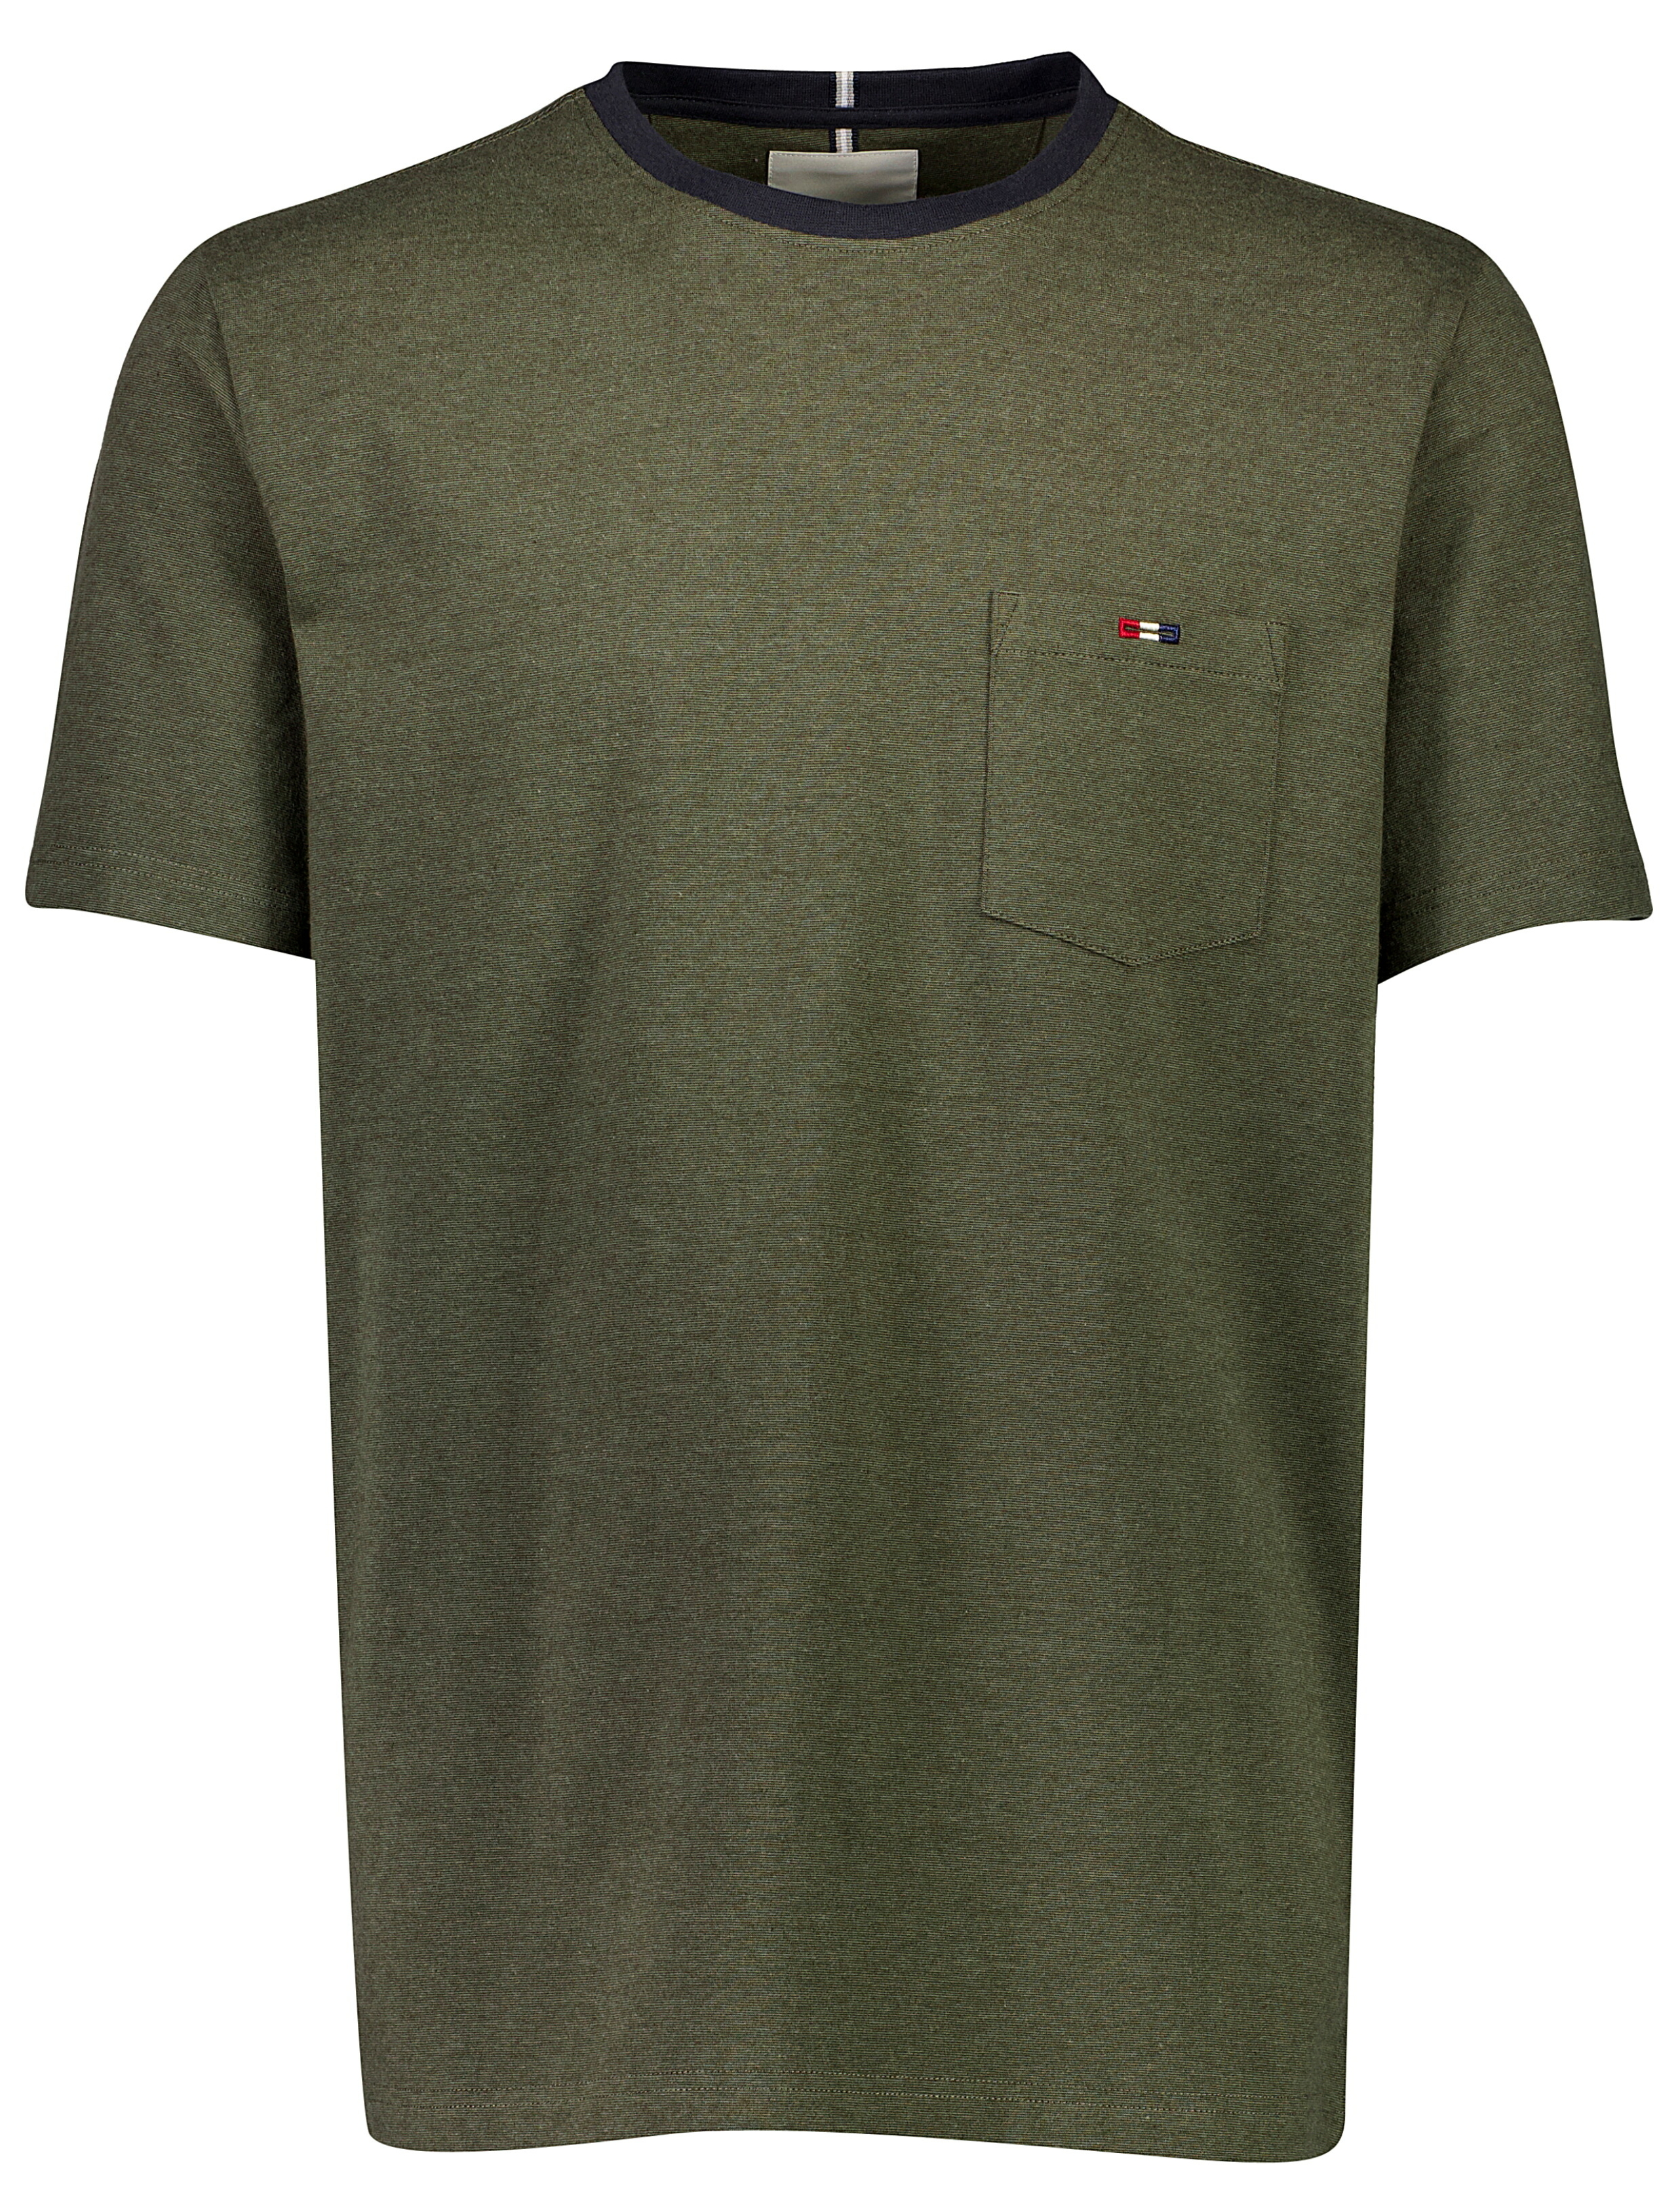 Bison T-shirt grön / army